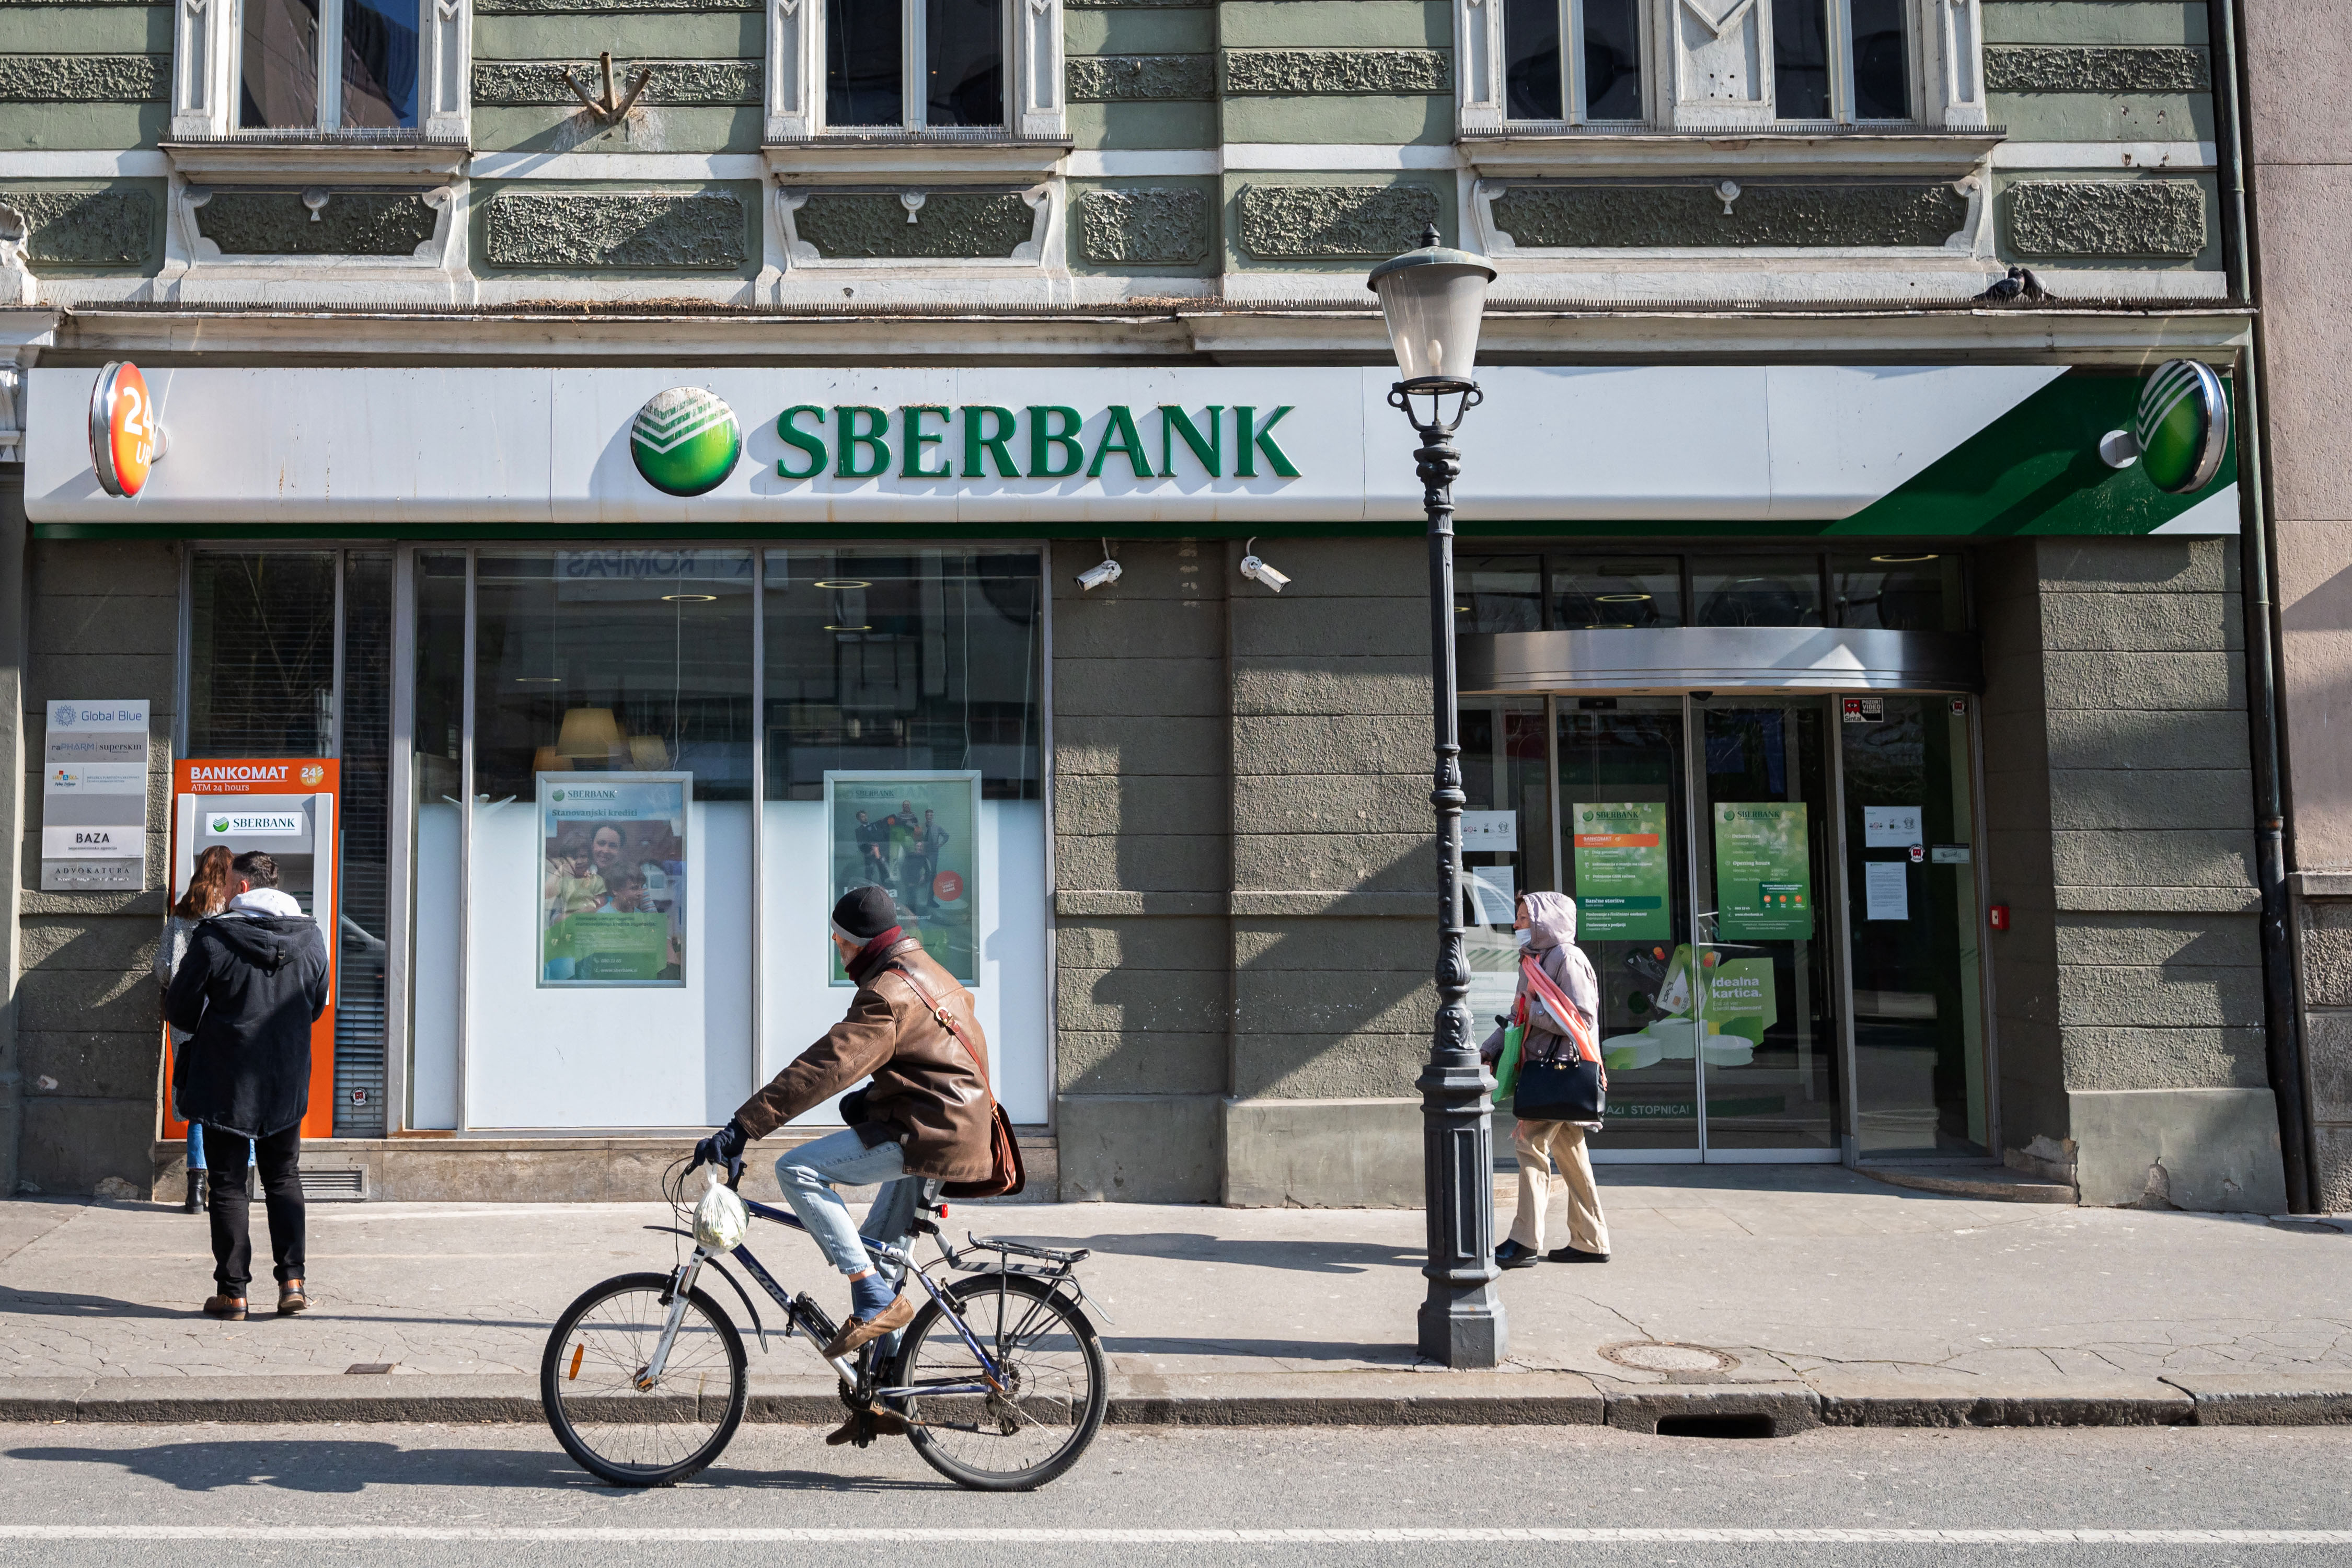 Sberbank-ügy: 5 munkanap után indíthatja a betétesek kifizetését az OBA